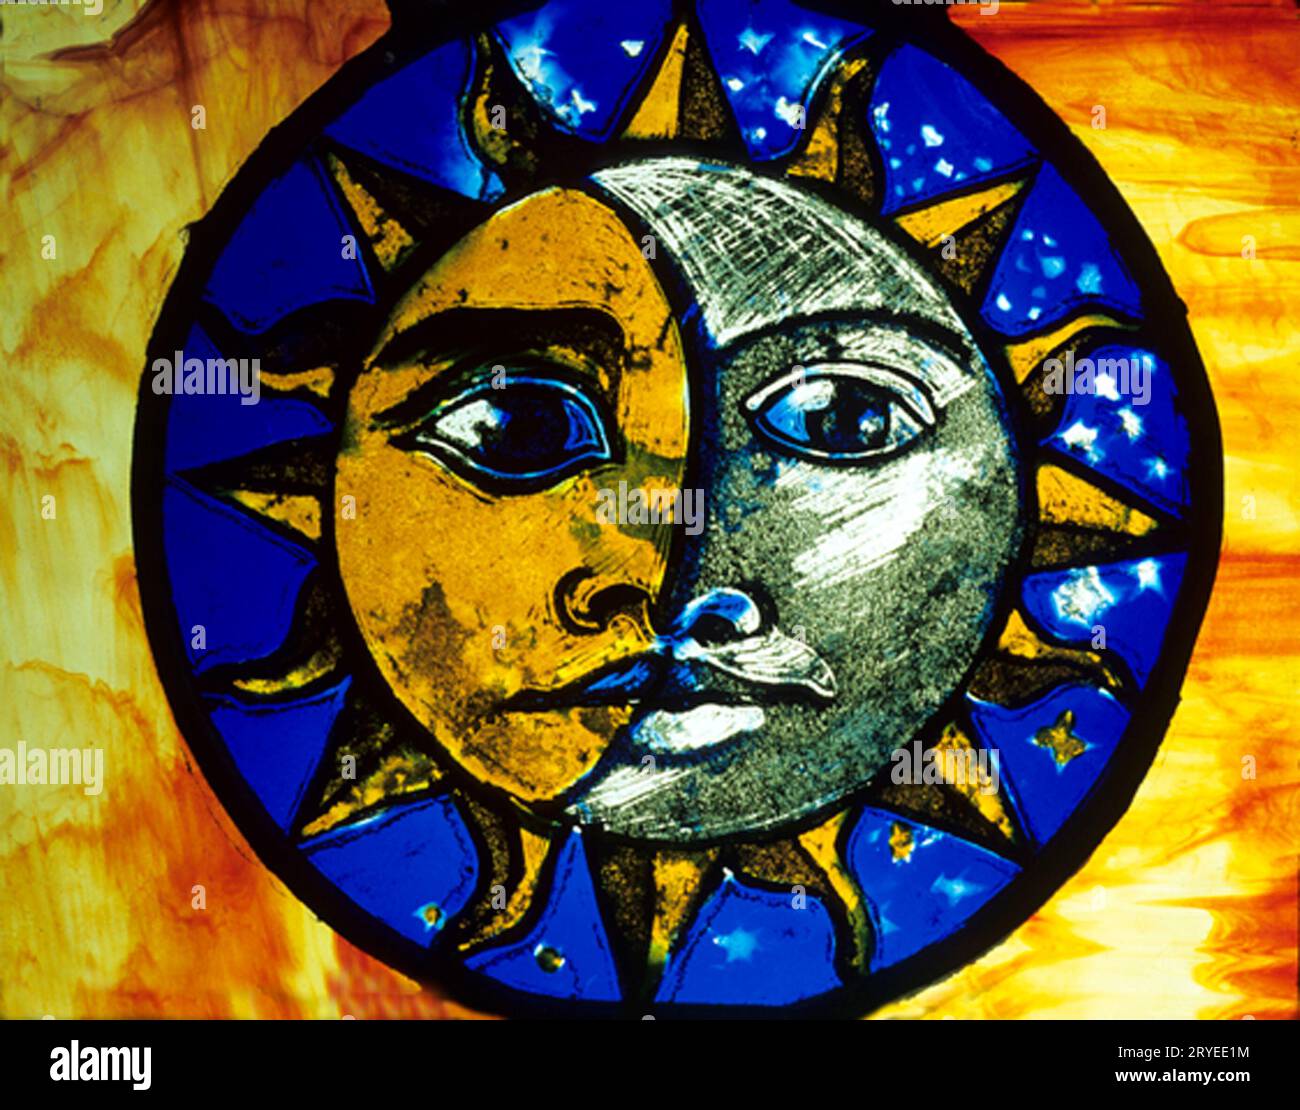 Catedral de Ely, Museo de vidrieras, Sol y Luna, cara humana, vidrio moderno, Cambridgeshire, Inglaterra, Reino Unido Foto de stock